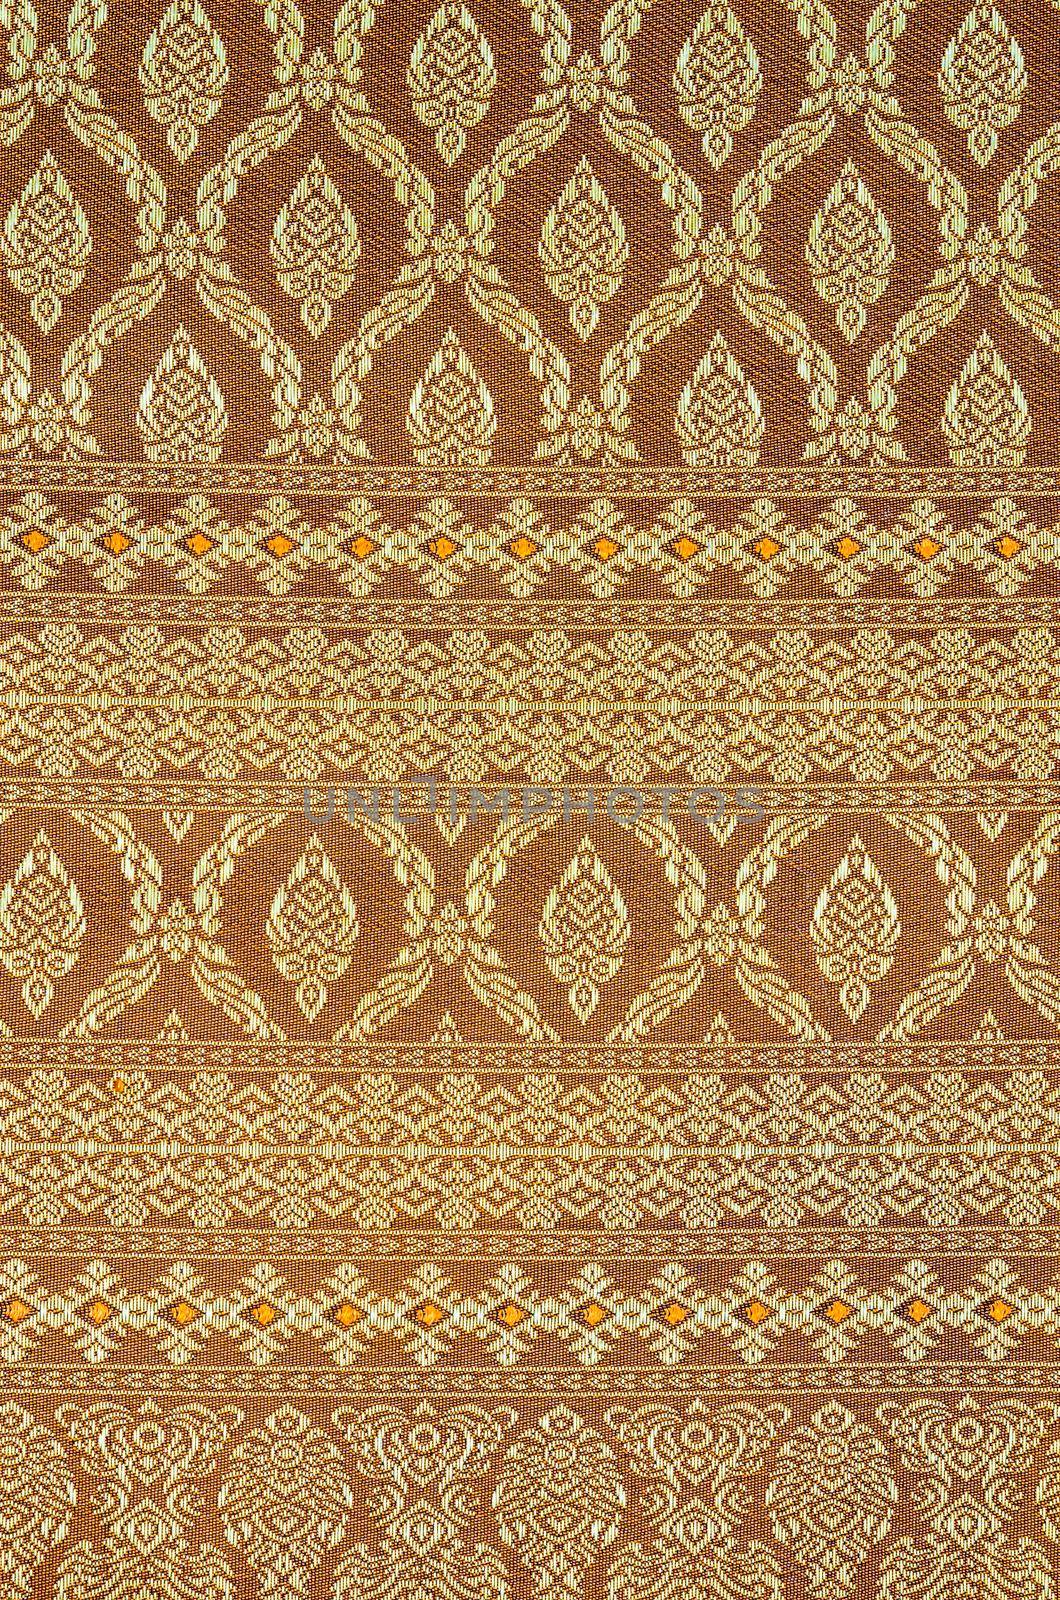 Traditional batik sarong pattern. by Gamjai